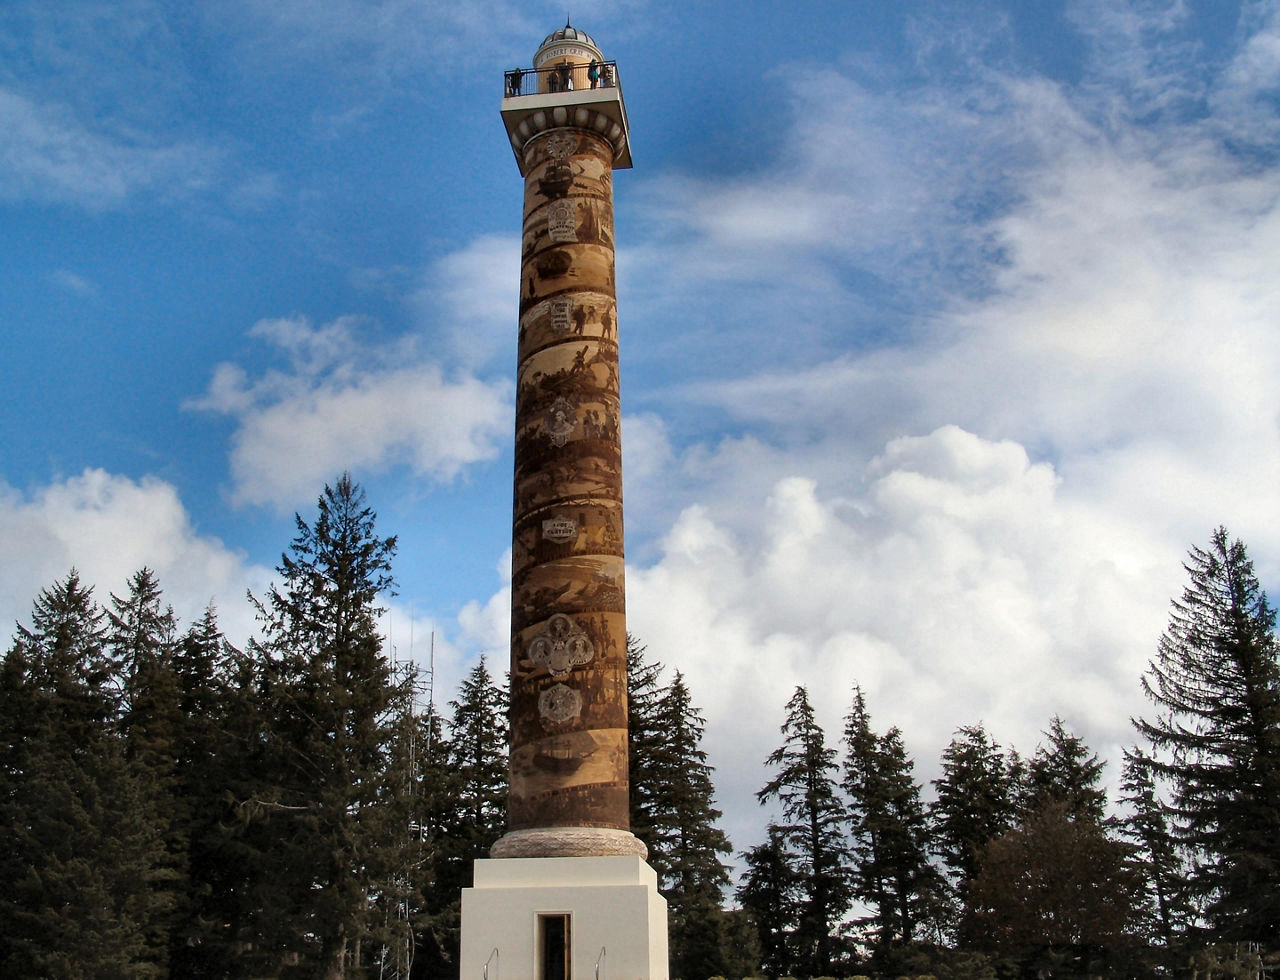 The Astoria Column monument in Oregon